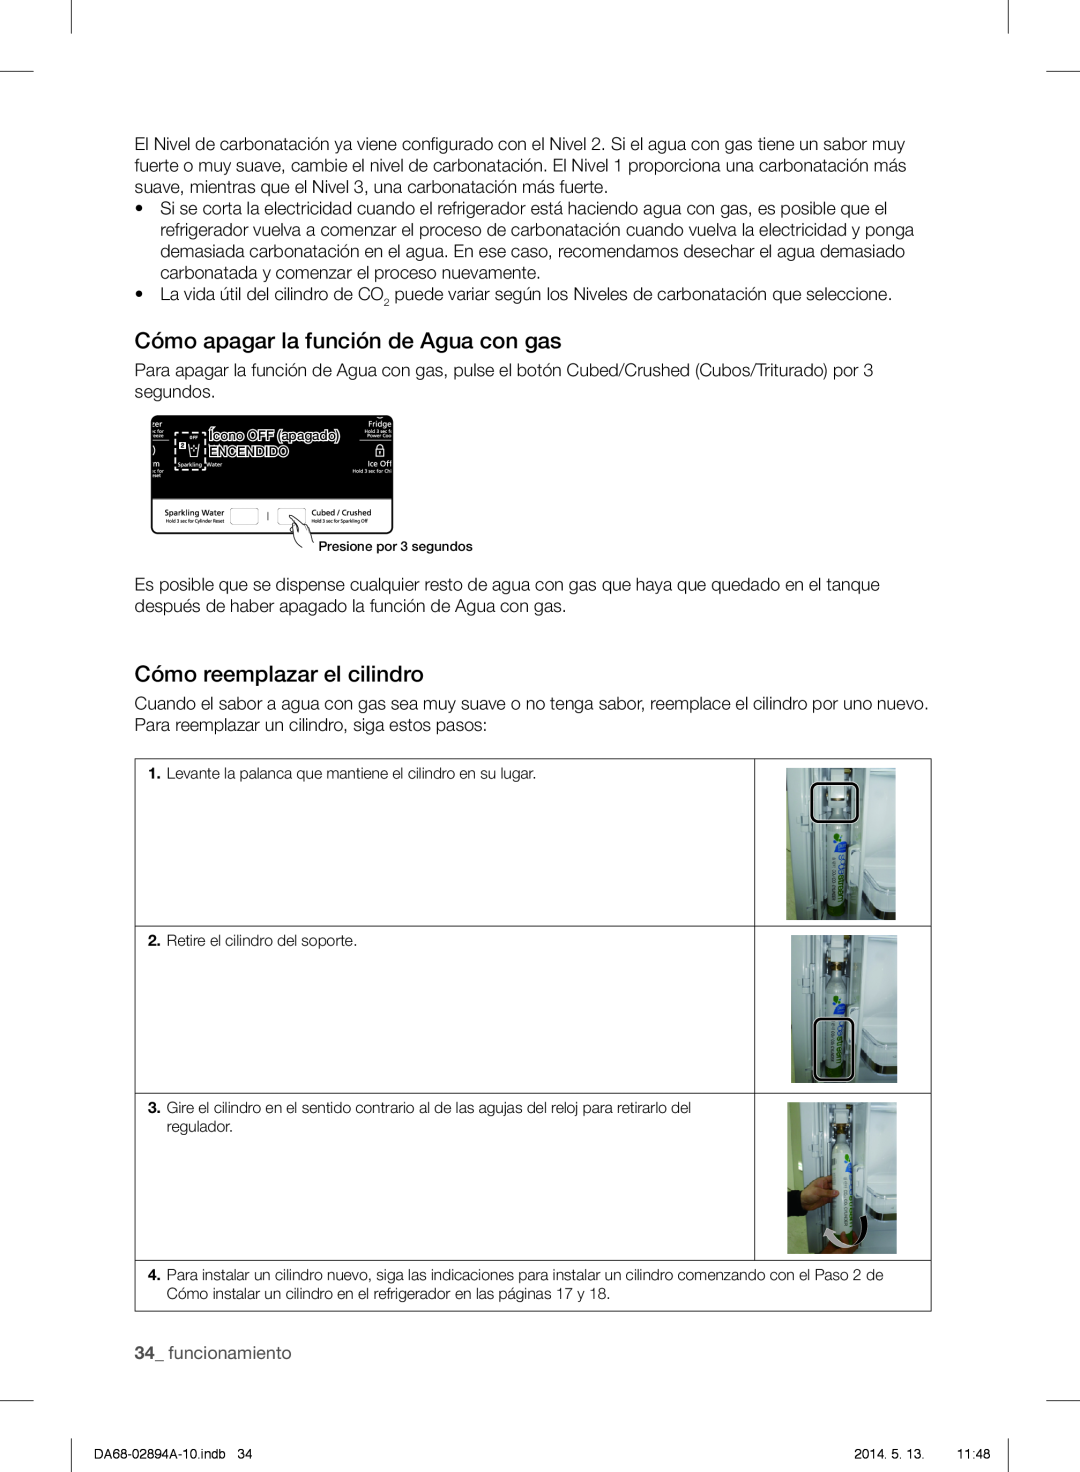 Samsung RF31FMESBSR user manual Cómo apagar la función de Agua con gas, Cómo reemplazar el cilindro, 34_ funcionamiento 